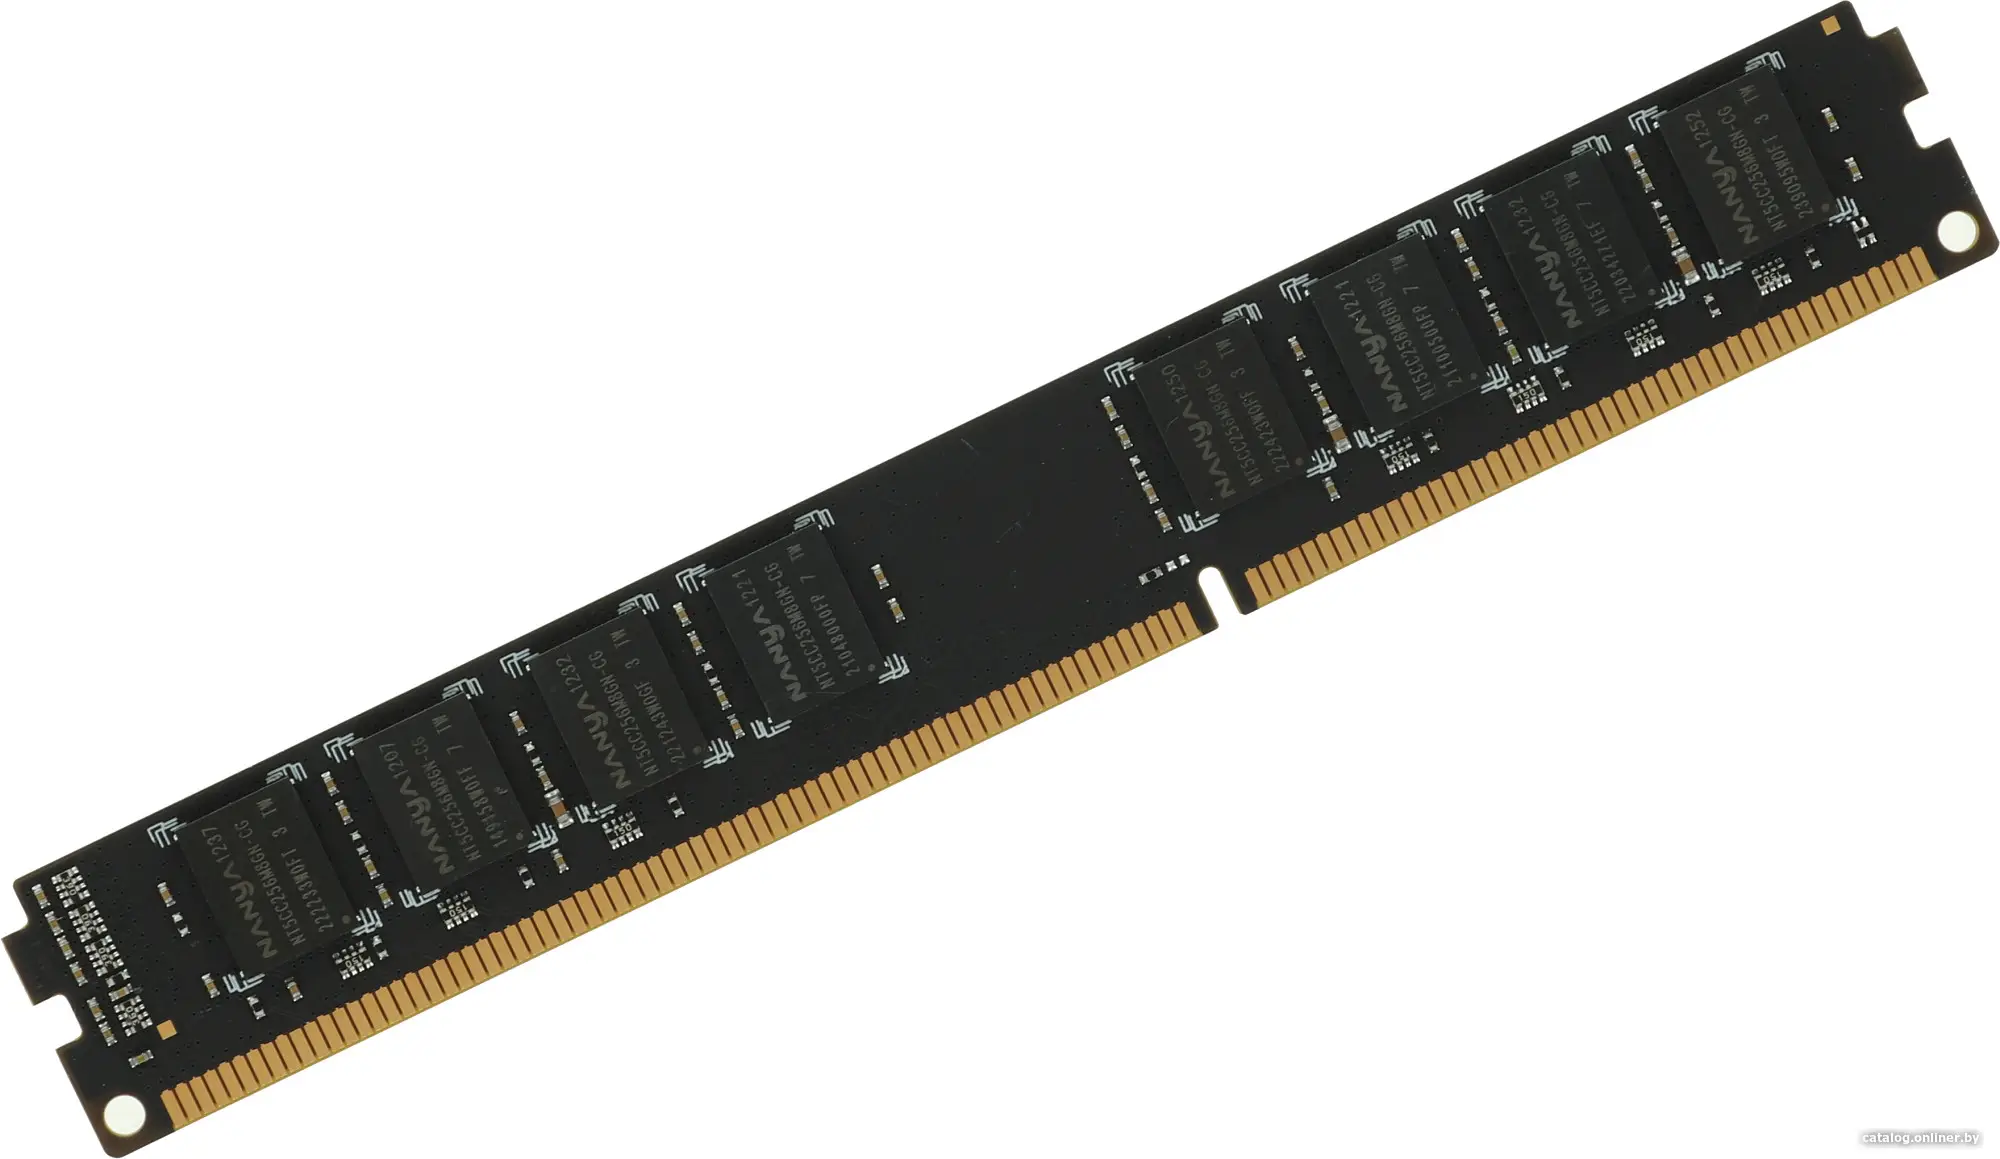 Купить Оперативная память Digma DDR3 4Gb (DGMAD31333004D), цена, опт и розница